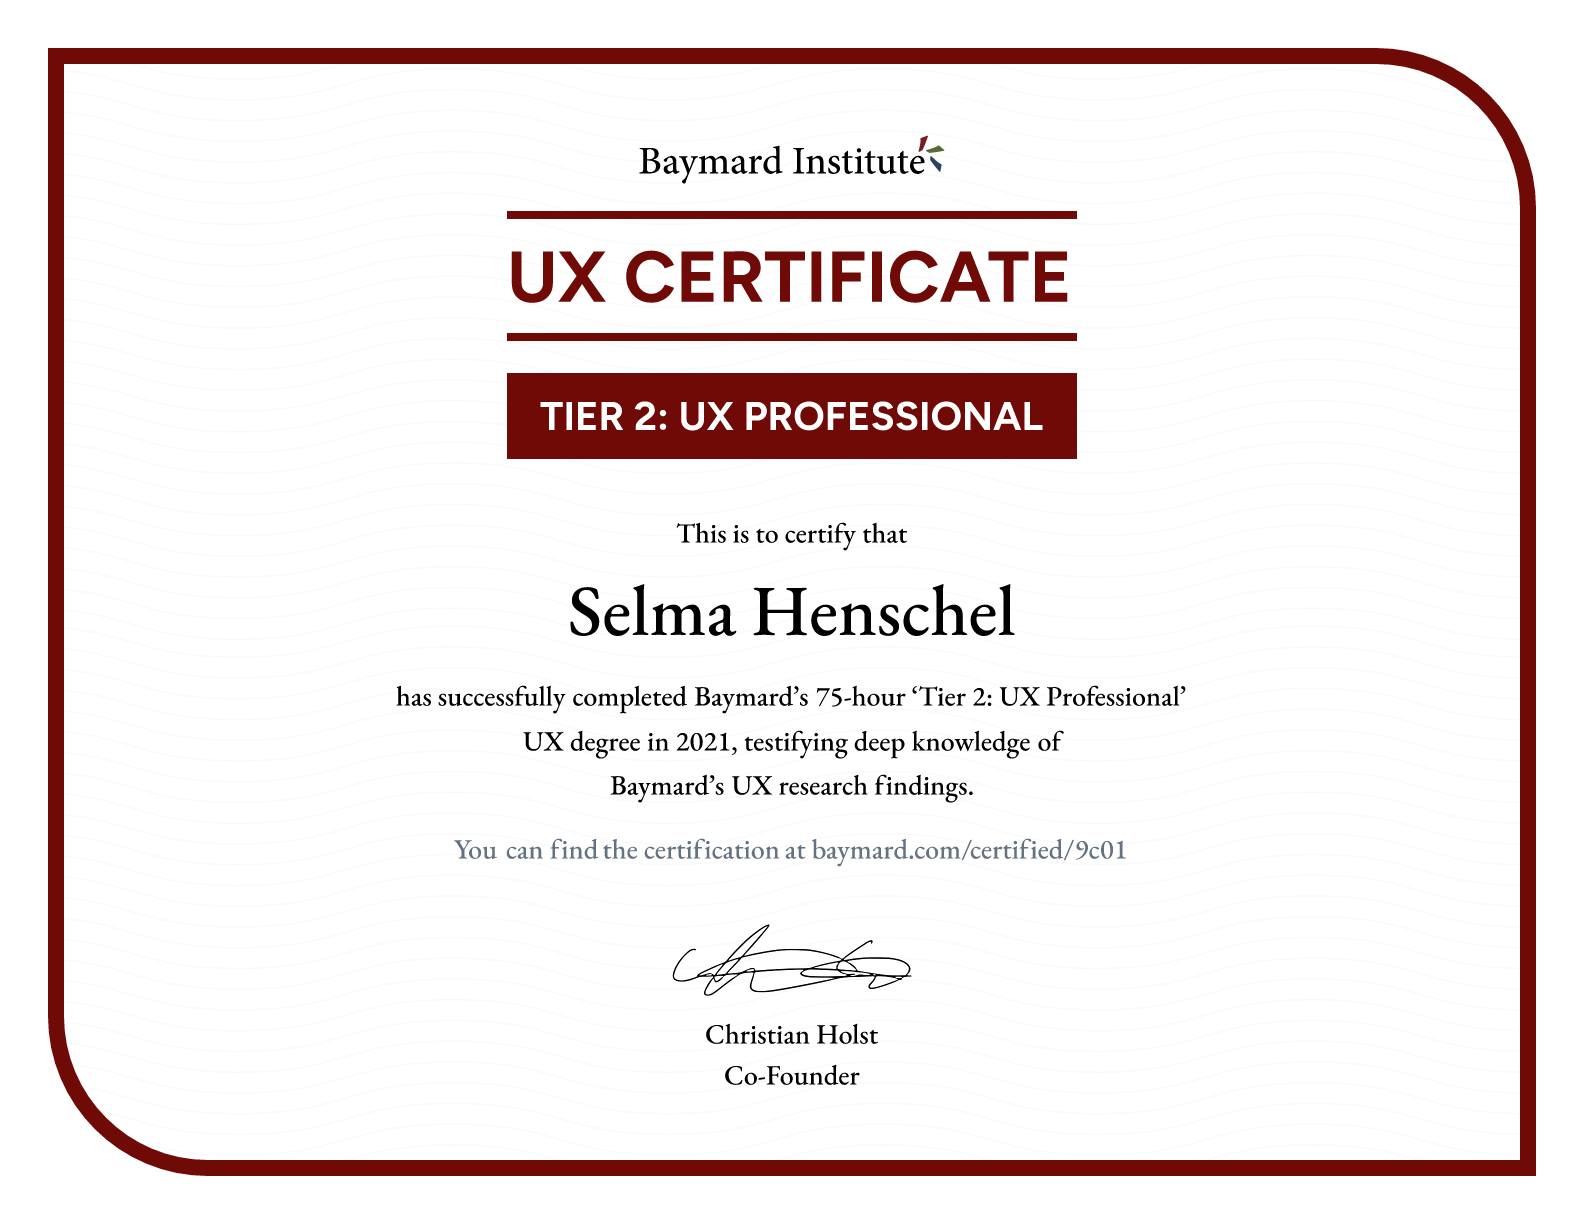 Selma Henschel’s certificate